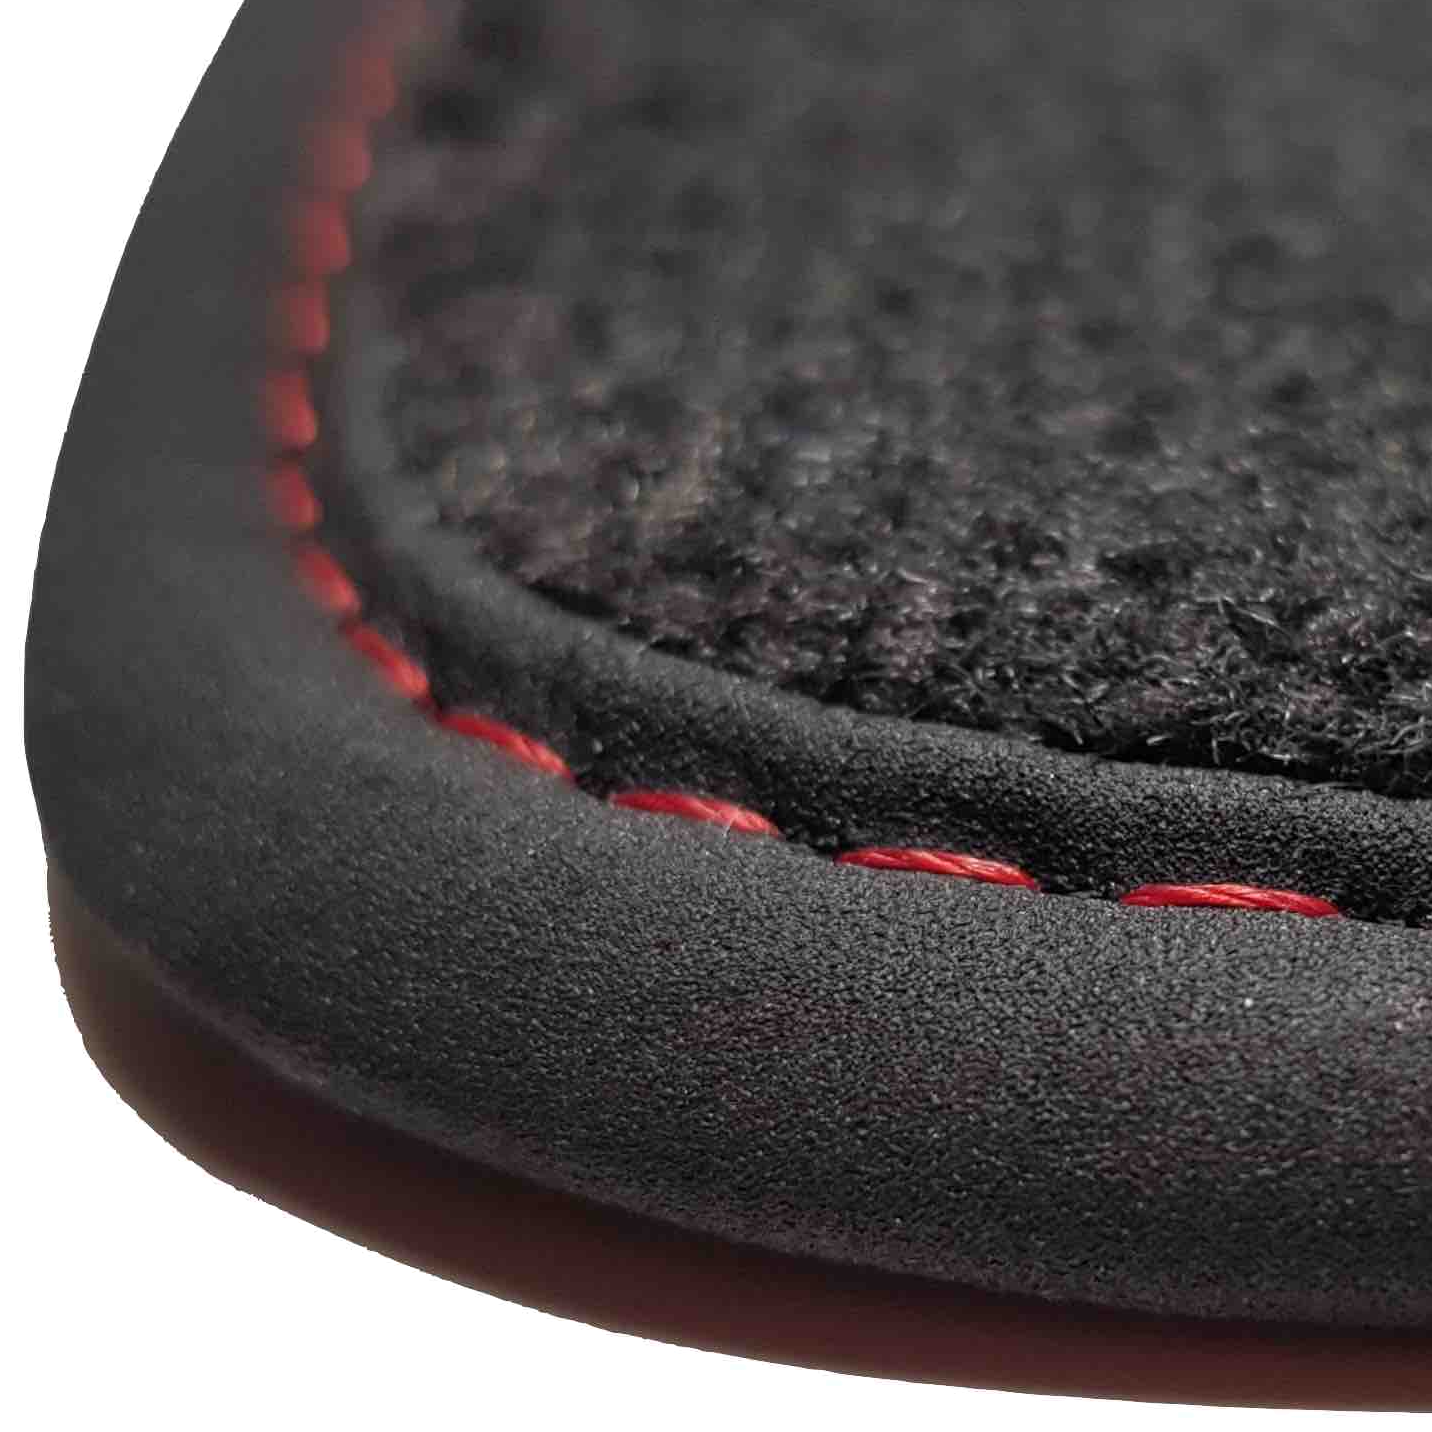 tapis auto R5 Conducteur coffre d'origine Renault prix discount livraison gratuite moquette noir bordure rouge